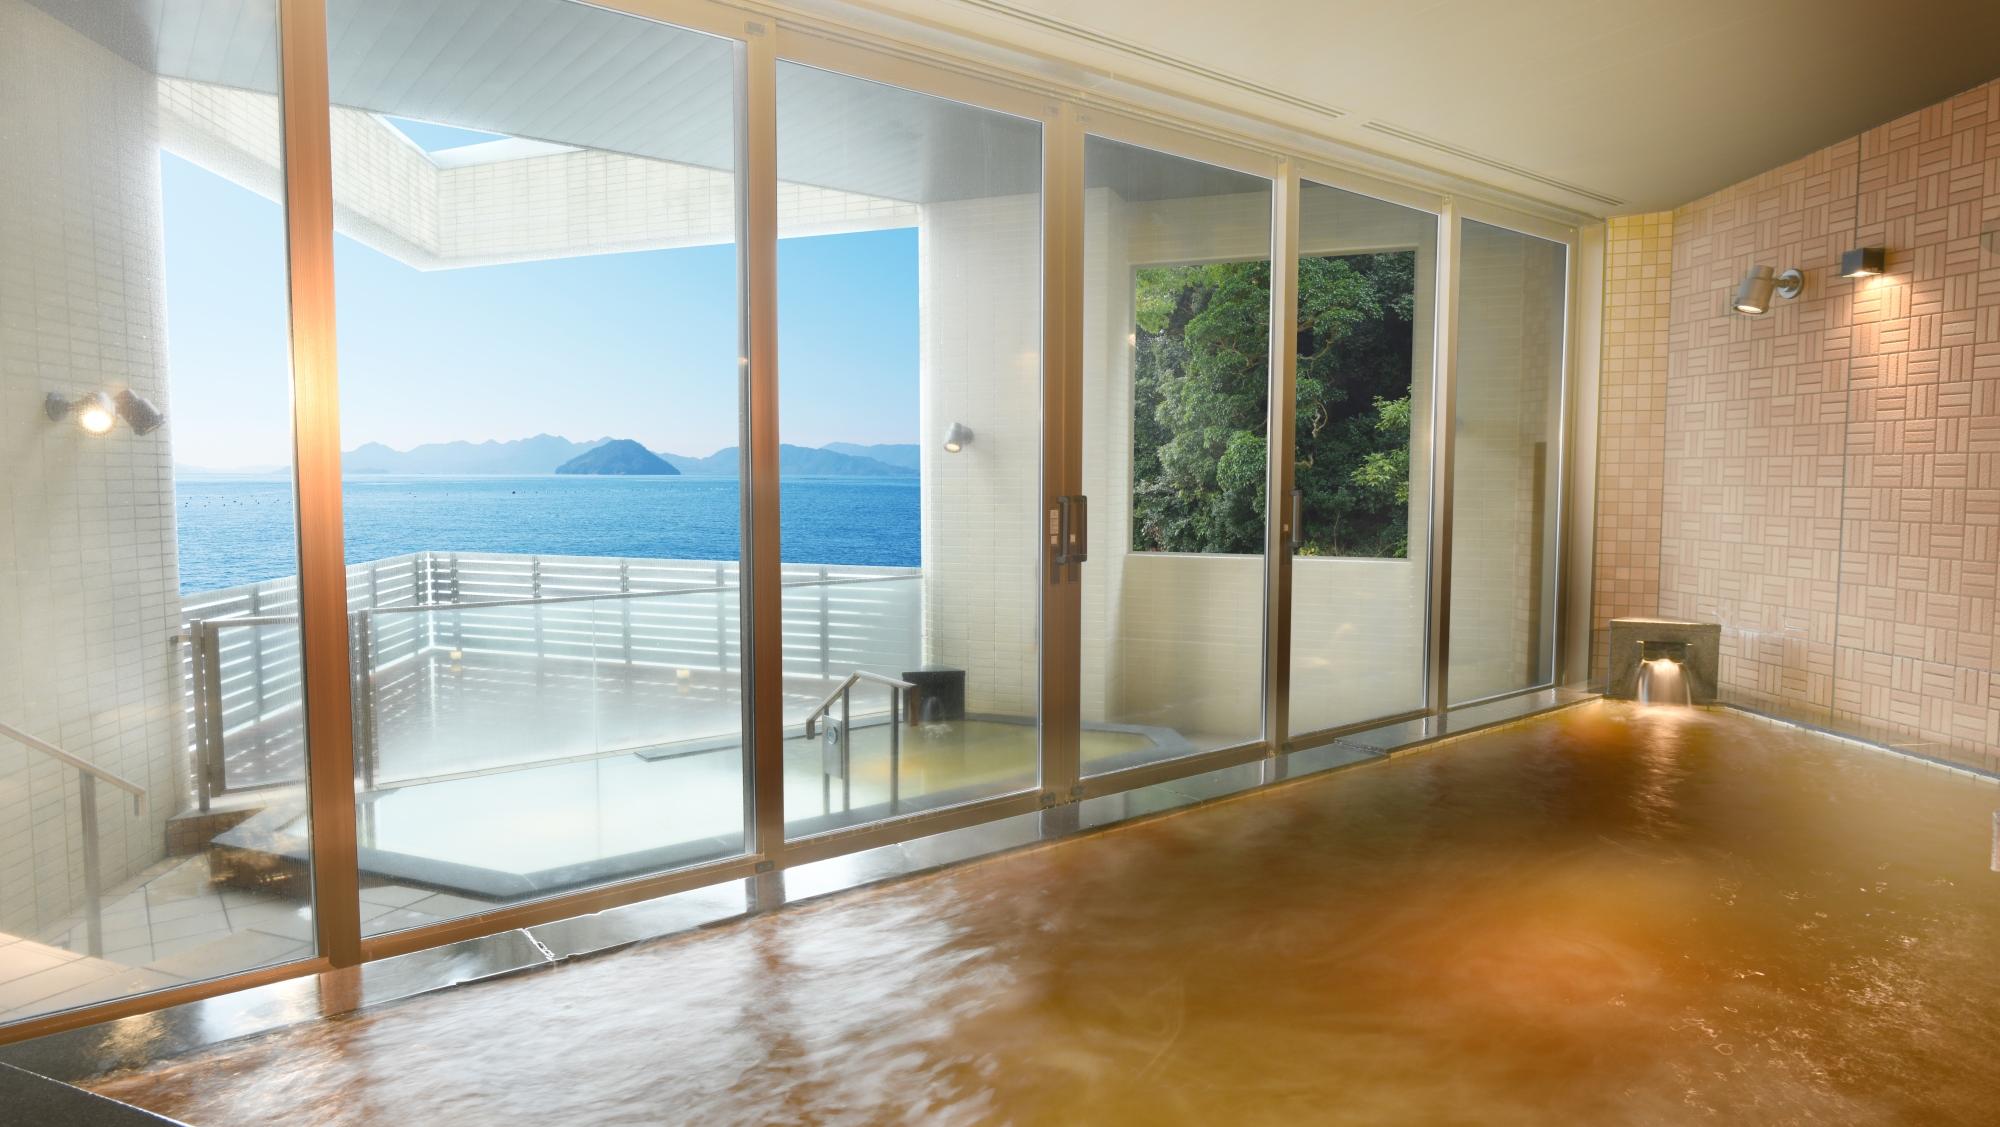 広島温泉「瀬戸の湯」はご滞在中、何度でもご利用いただけます。